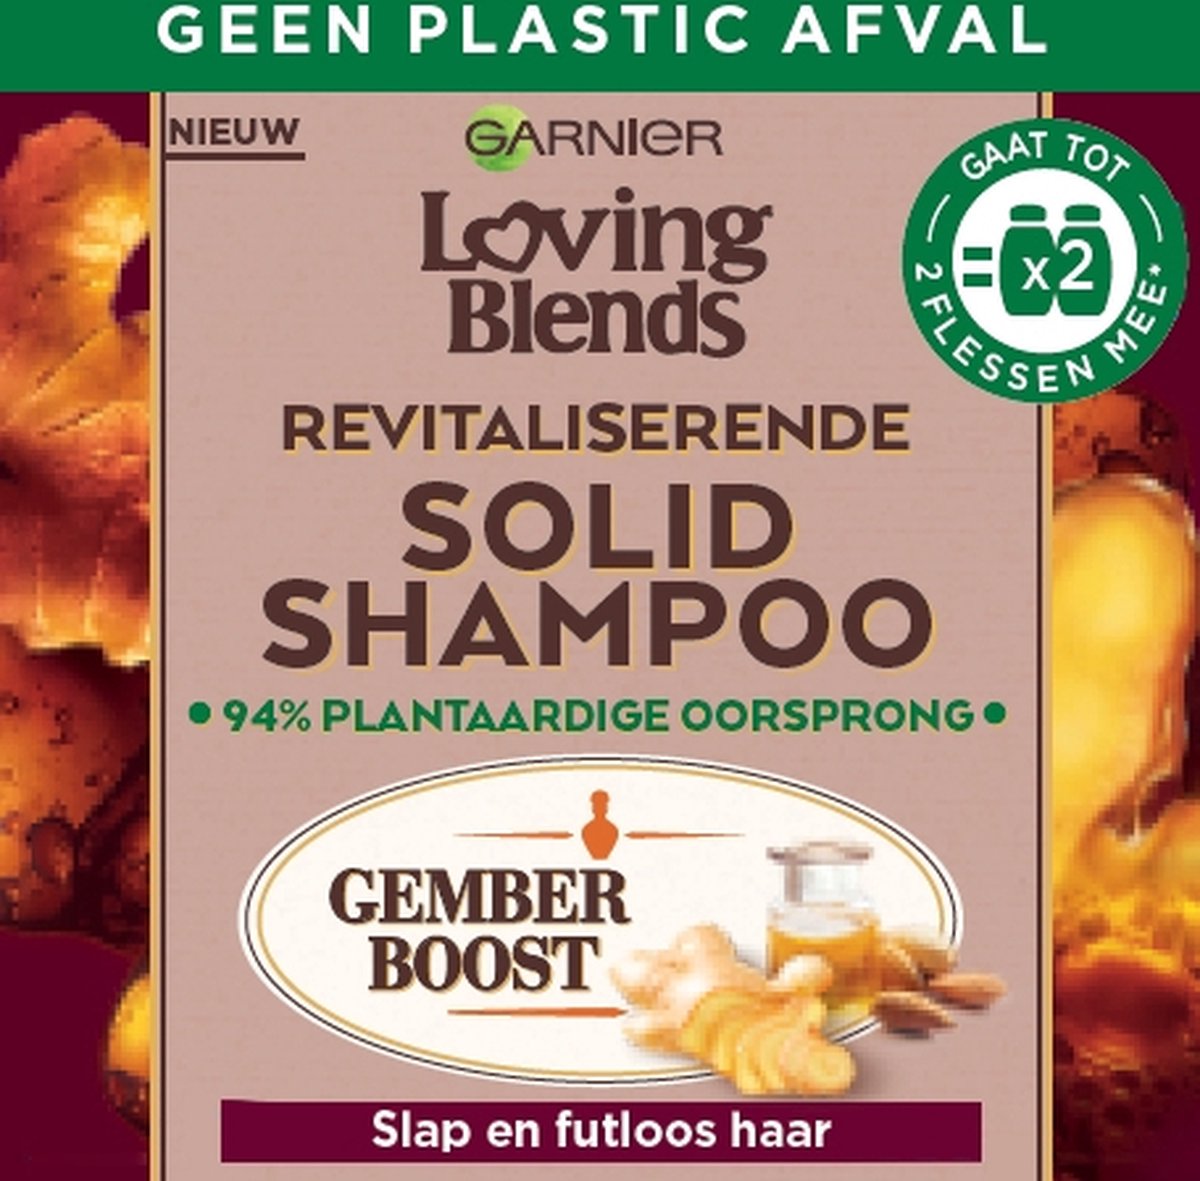 Garnier Loving Blends - Revitaliserende Solid Shampoo Bar - Gember - Voor Slap en Futloos Haar - 71 g - Garnier